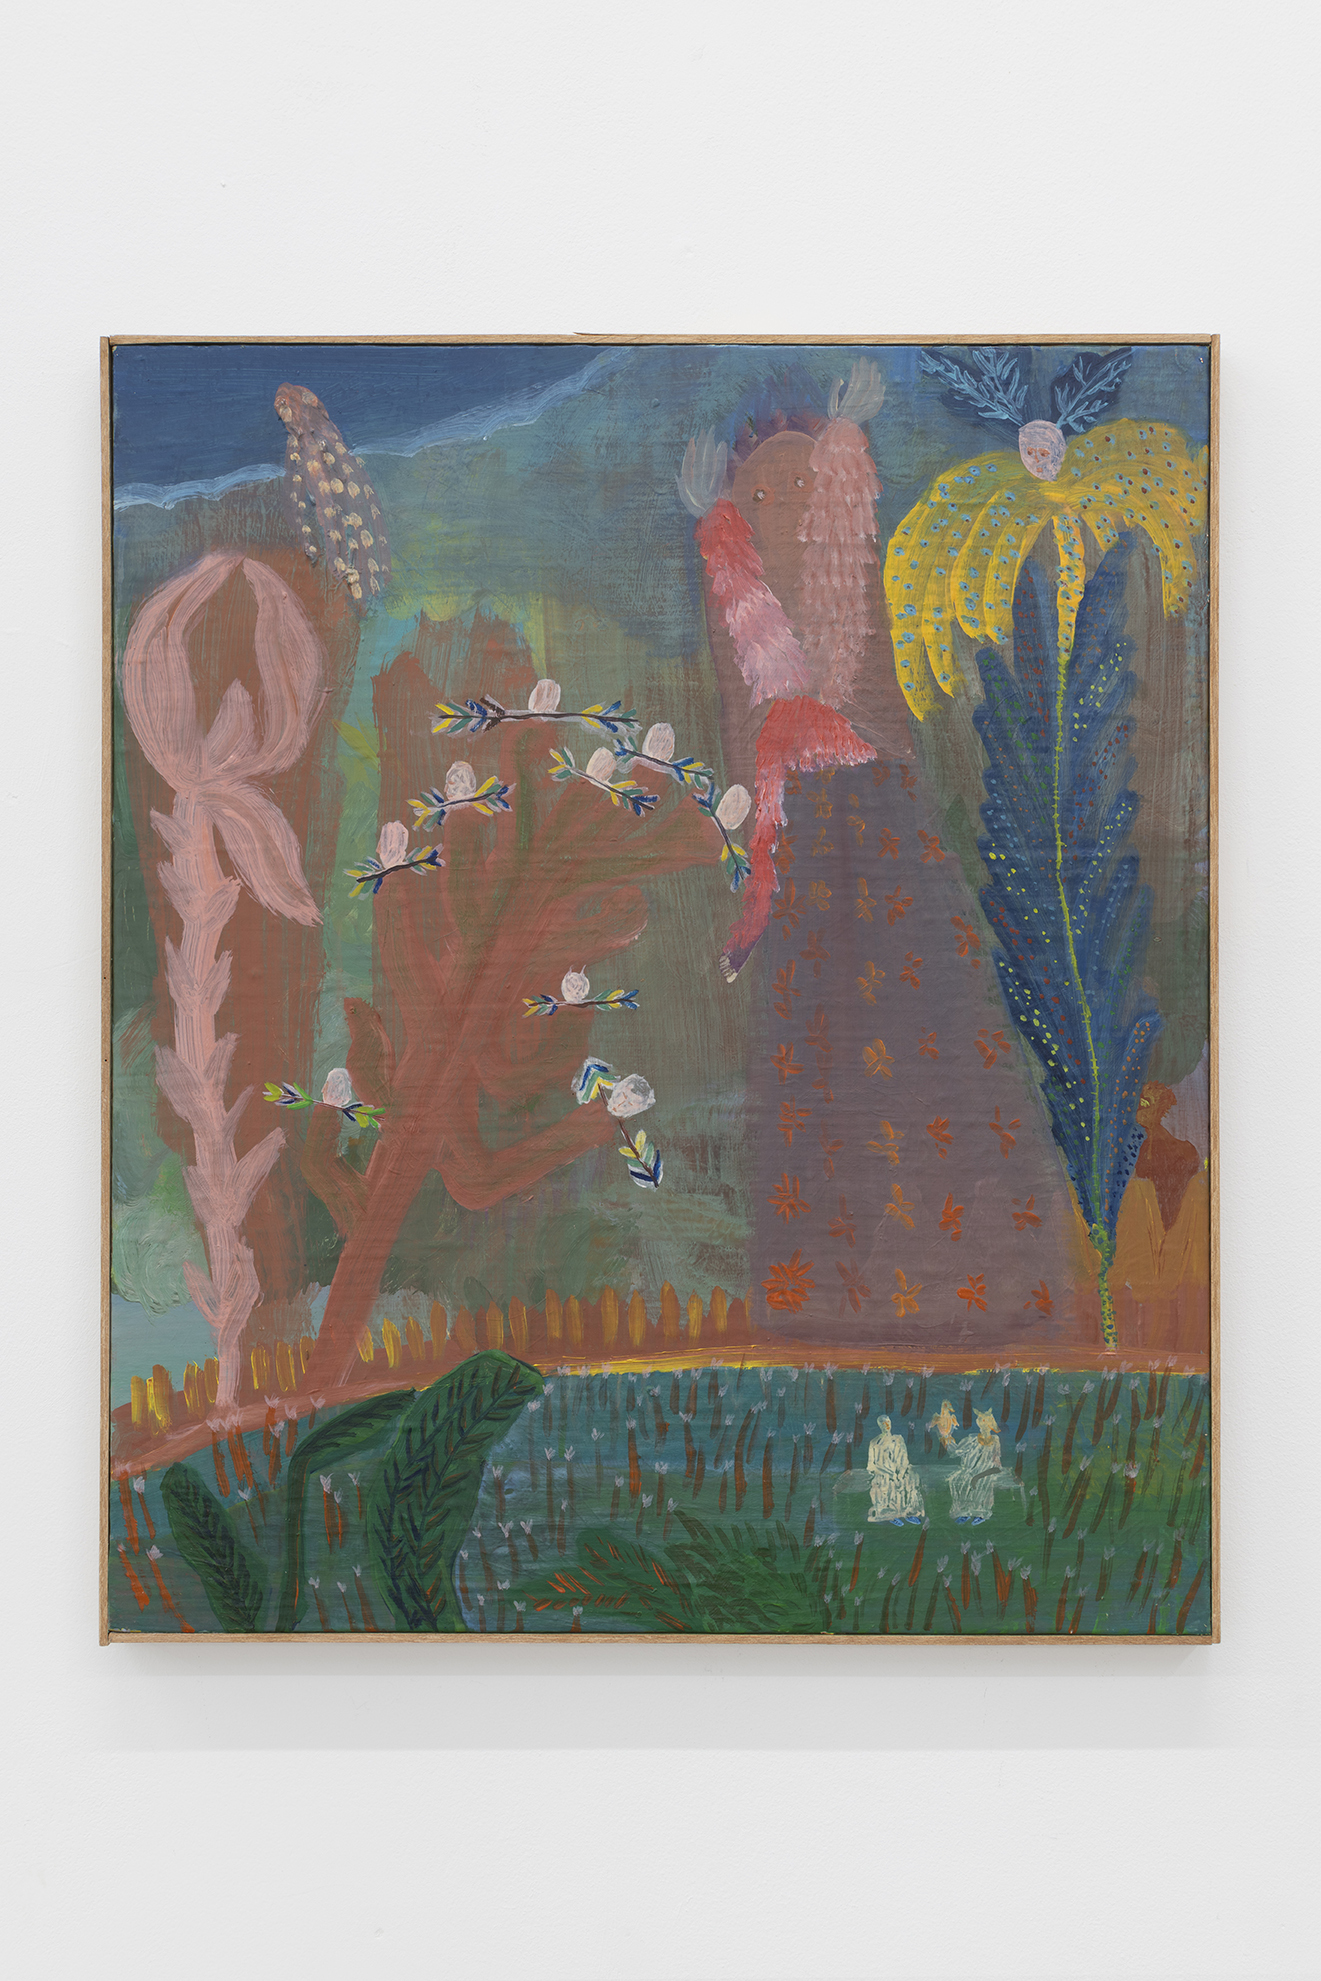 Octopus teacher, MarieZolamian, 61 x 52cm, oil on canvas on panel, 2022